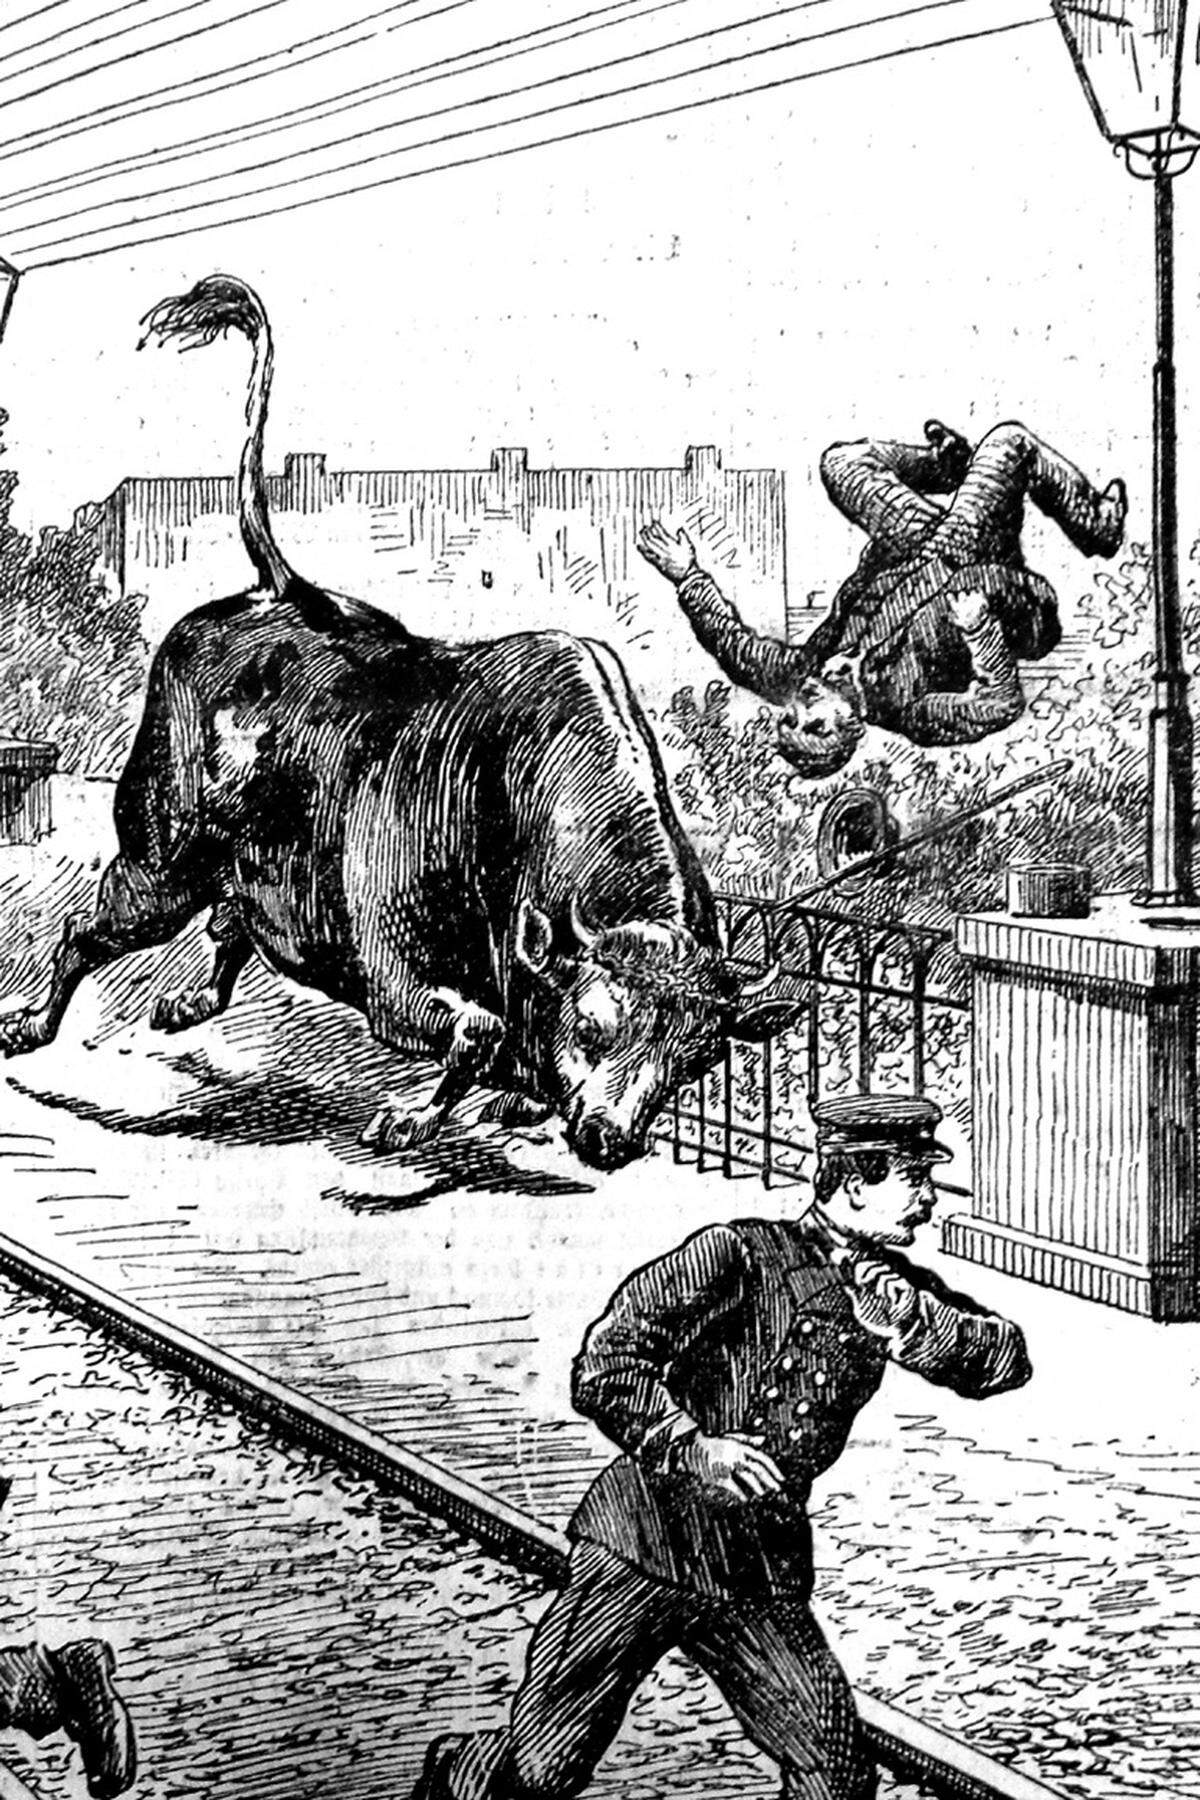 Gefahr drohte auch durch Vieh, das oftmals unter chaotischen Umständen zur Schlachthalle in Sankt Marx getrieben wurde. Dieses Titelblatt zeigt, wie ein Eisenbahnarbeiter auf der Brücke der Bahnstation Hetzendorf am 26. September 1890 von einem Stier von der Brücke geschleudert wurde. Der Mann überlebte den Angriff nicht.